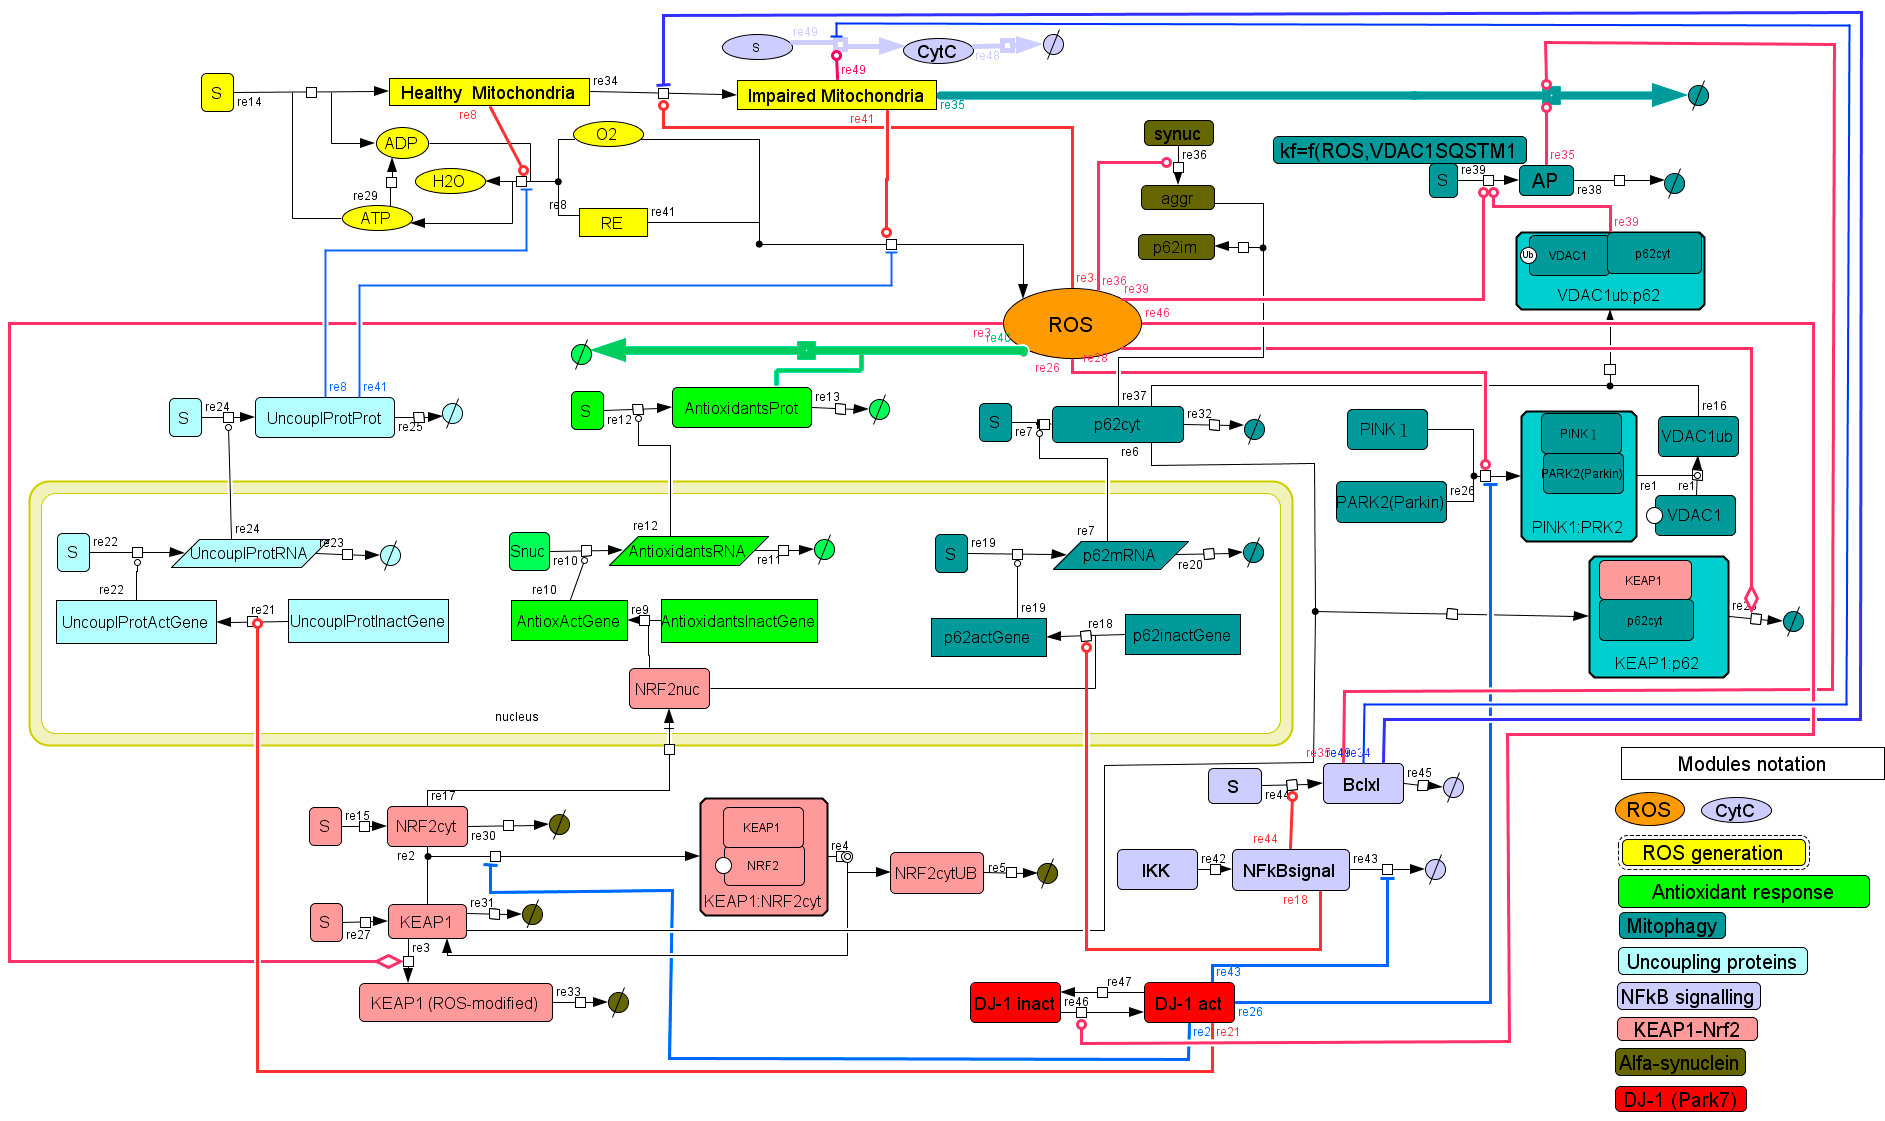 Схема регуляции АФК в клетке, включающая АТФ и ядро